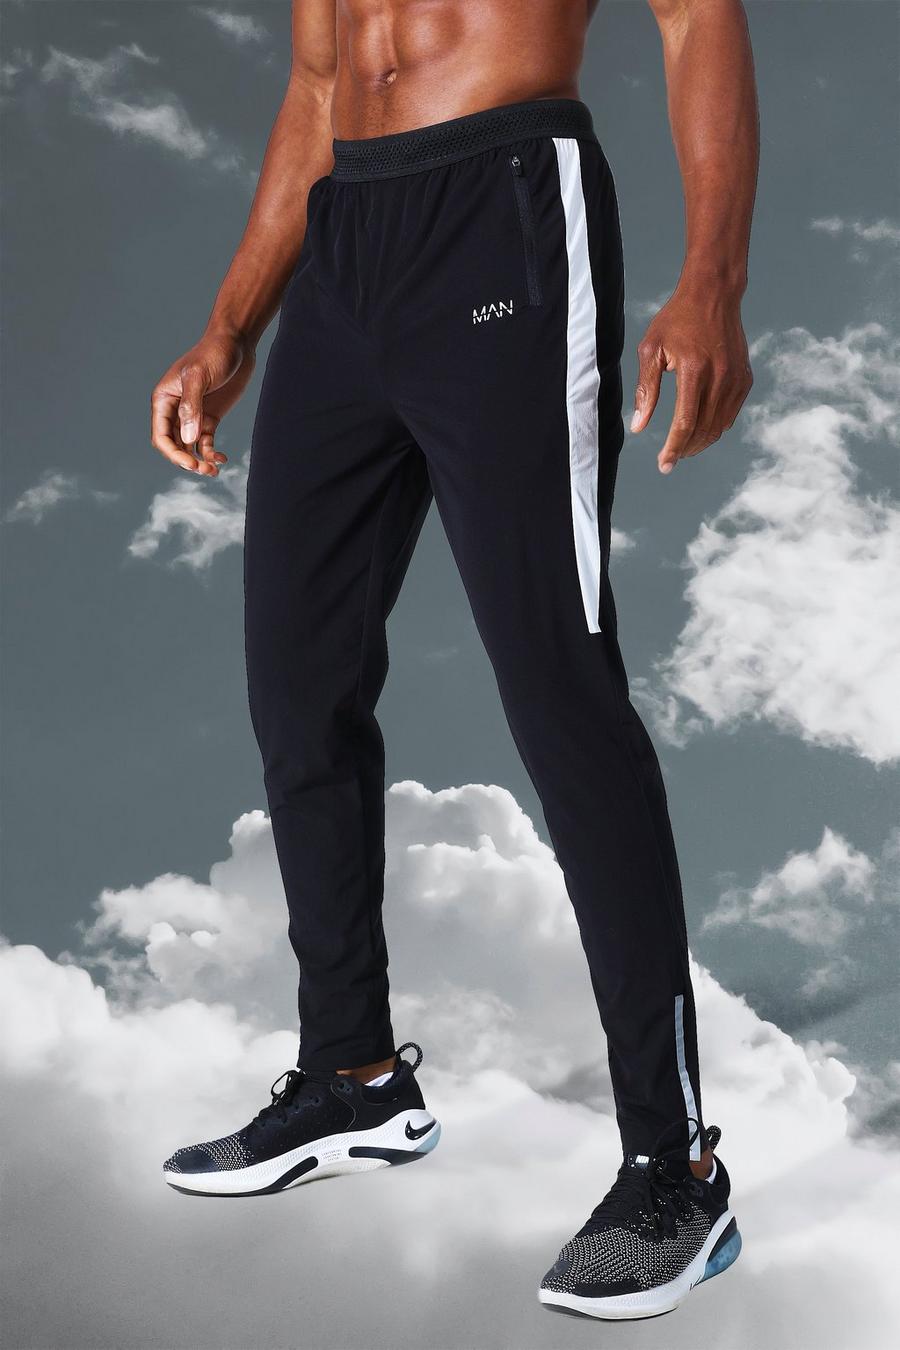 שחור negro מכנסי ריצה ספורטיביים קלילים עם כיתוב MAN ופס בצד